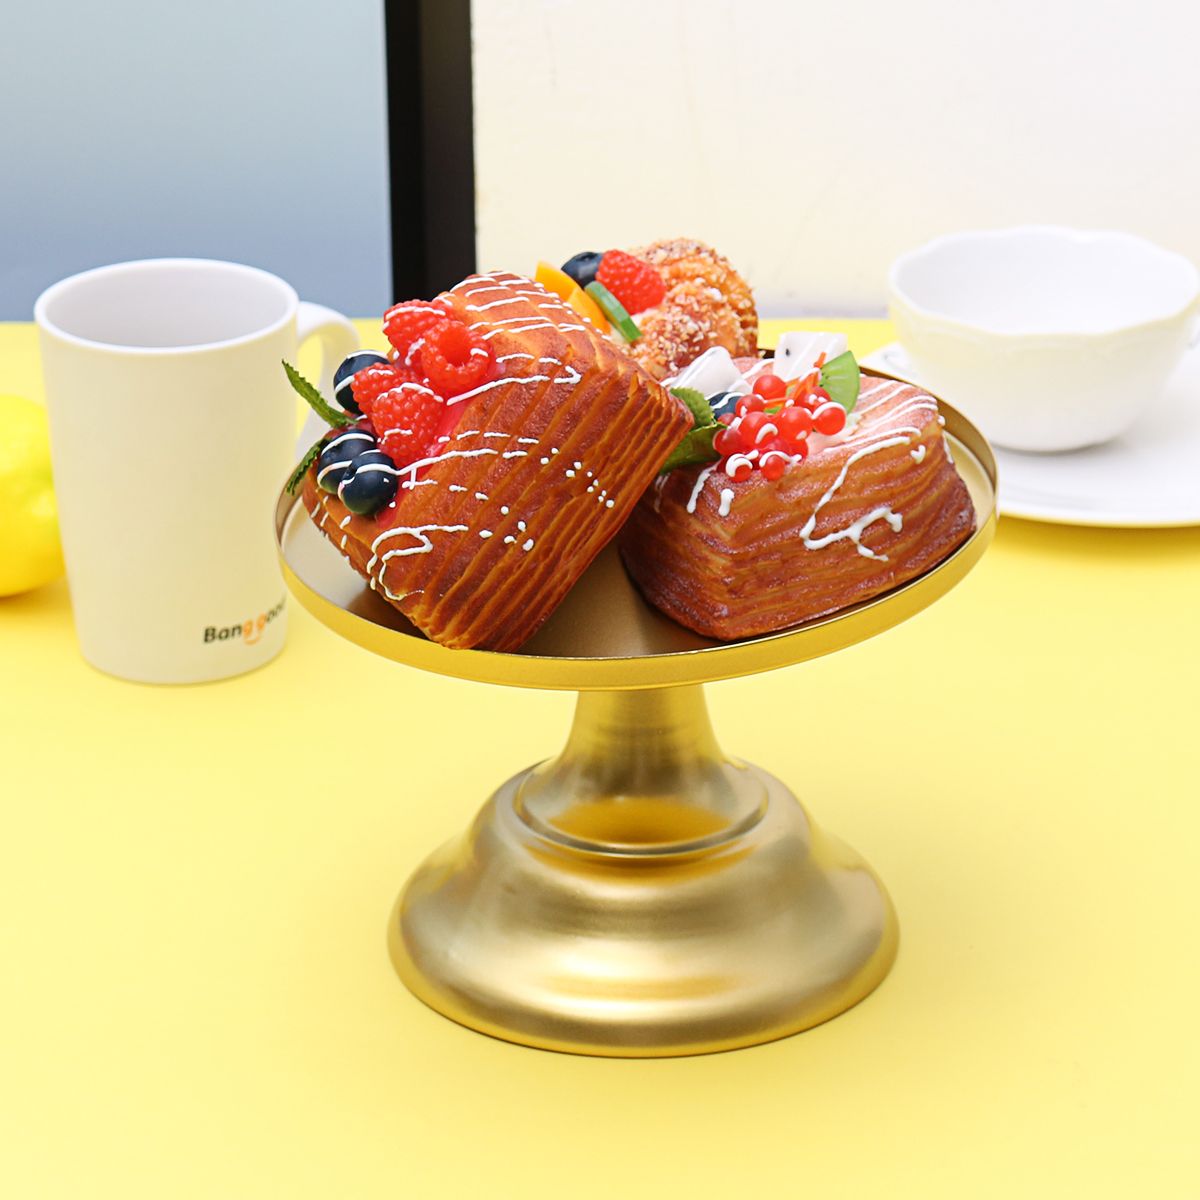 8Inch-Iron-Round-Cake-Stand-Pedestal-Dessert-Holder-Wedding-Party-Decorations-1490085